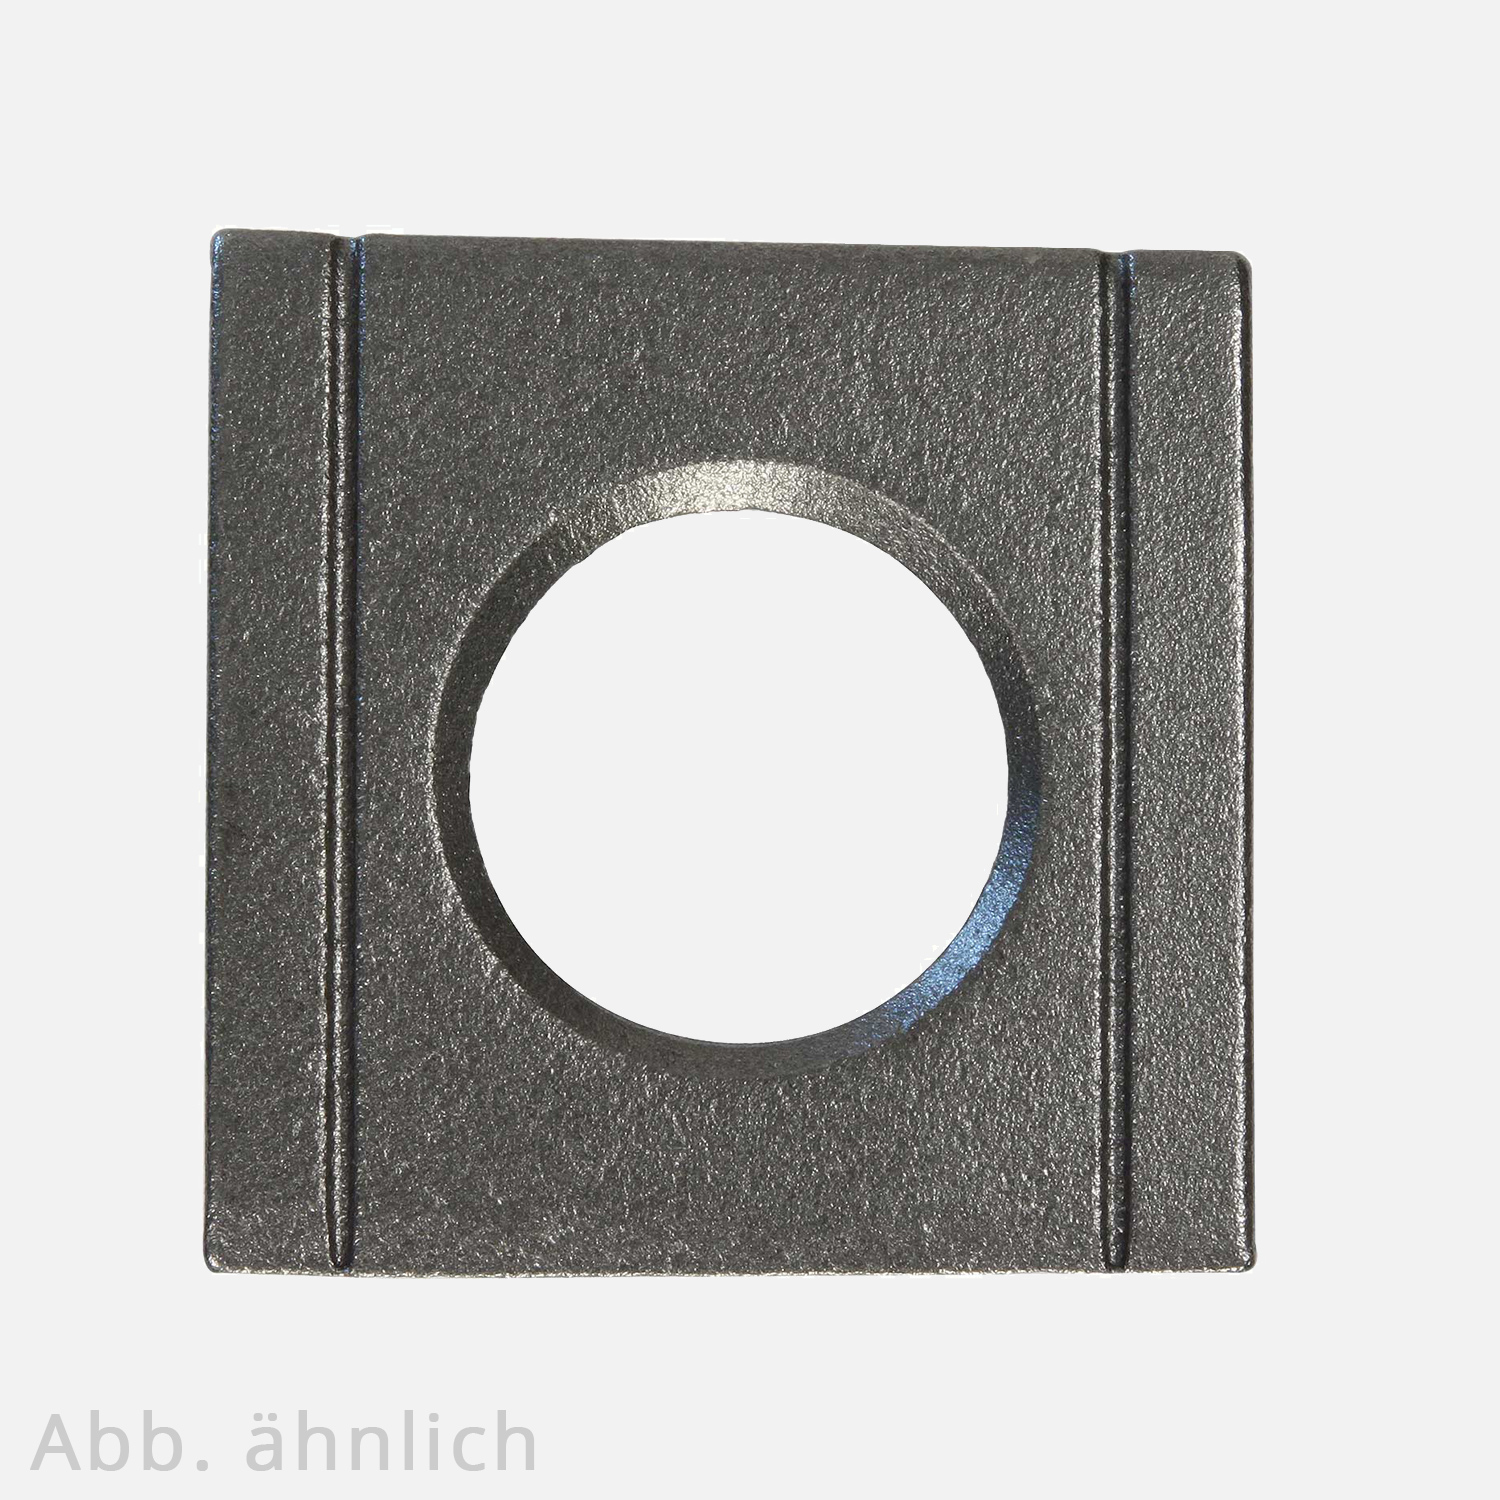 1 Vierkantscheibe - keilförmig 8% - 21 mm - DIN 6918 - Stahl vergütet